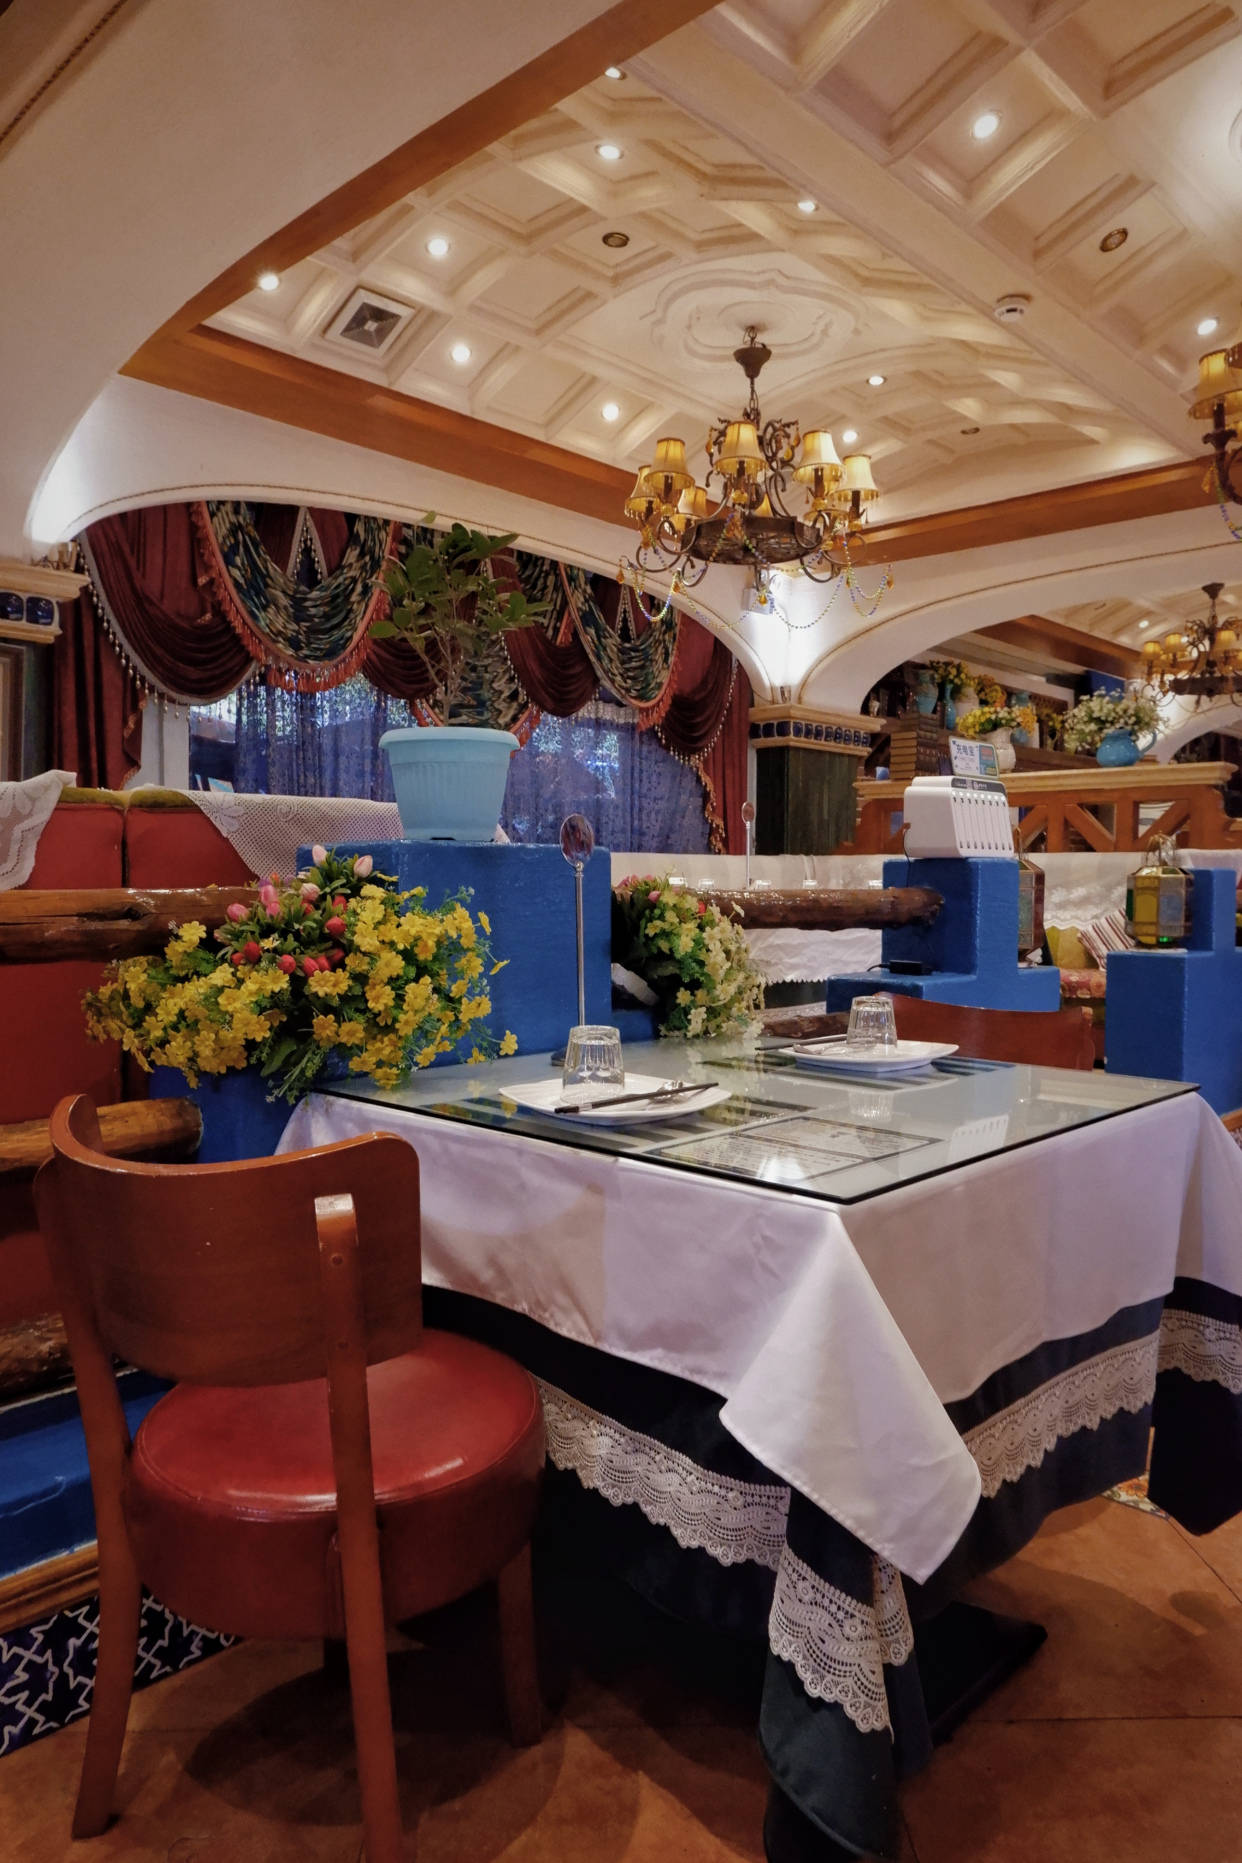 乌鲁木齐环境高端餐厅图片